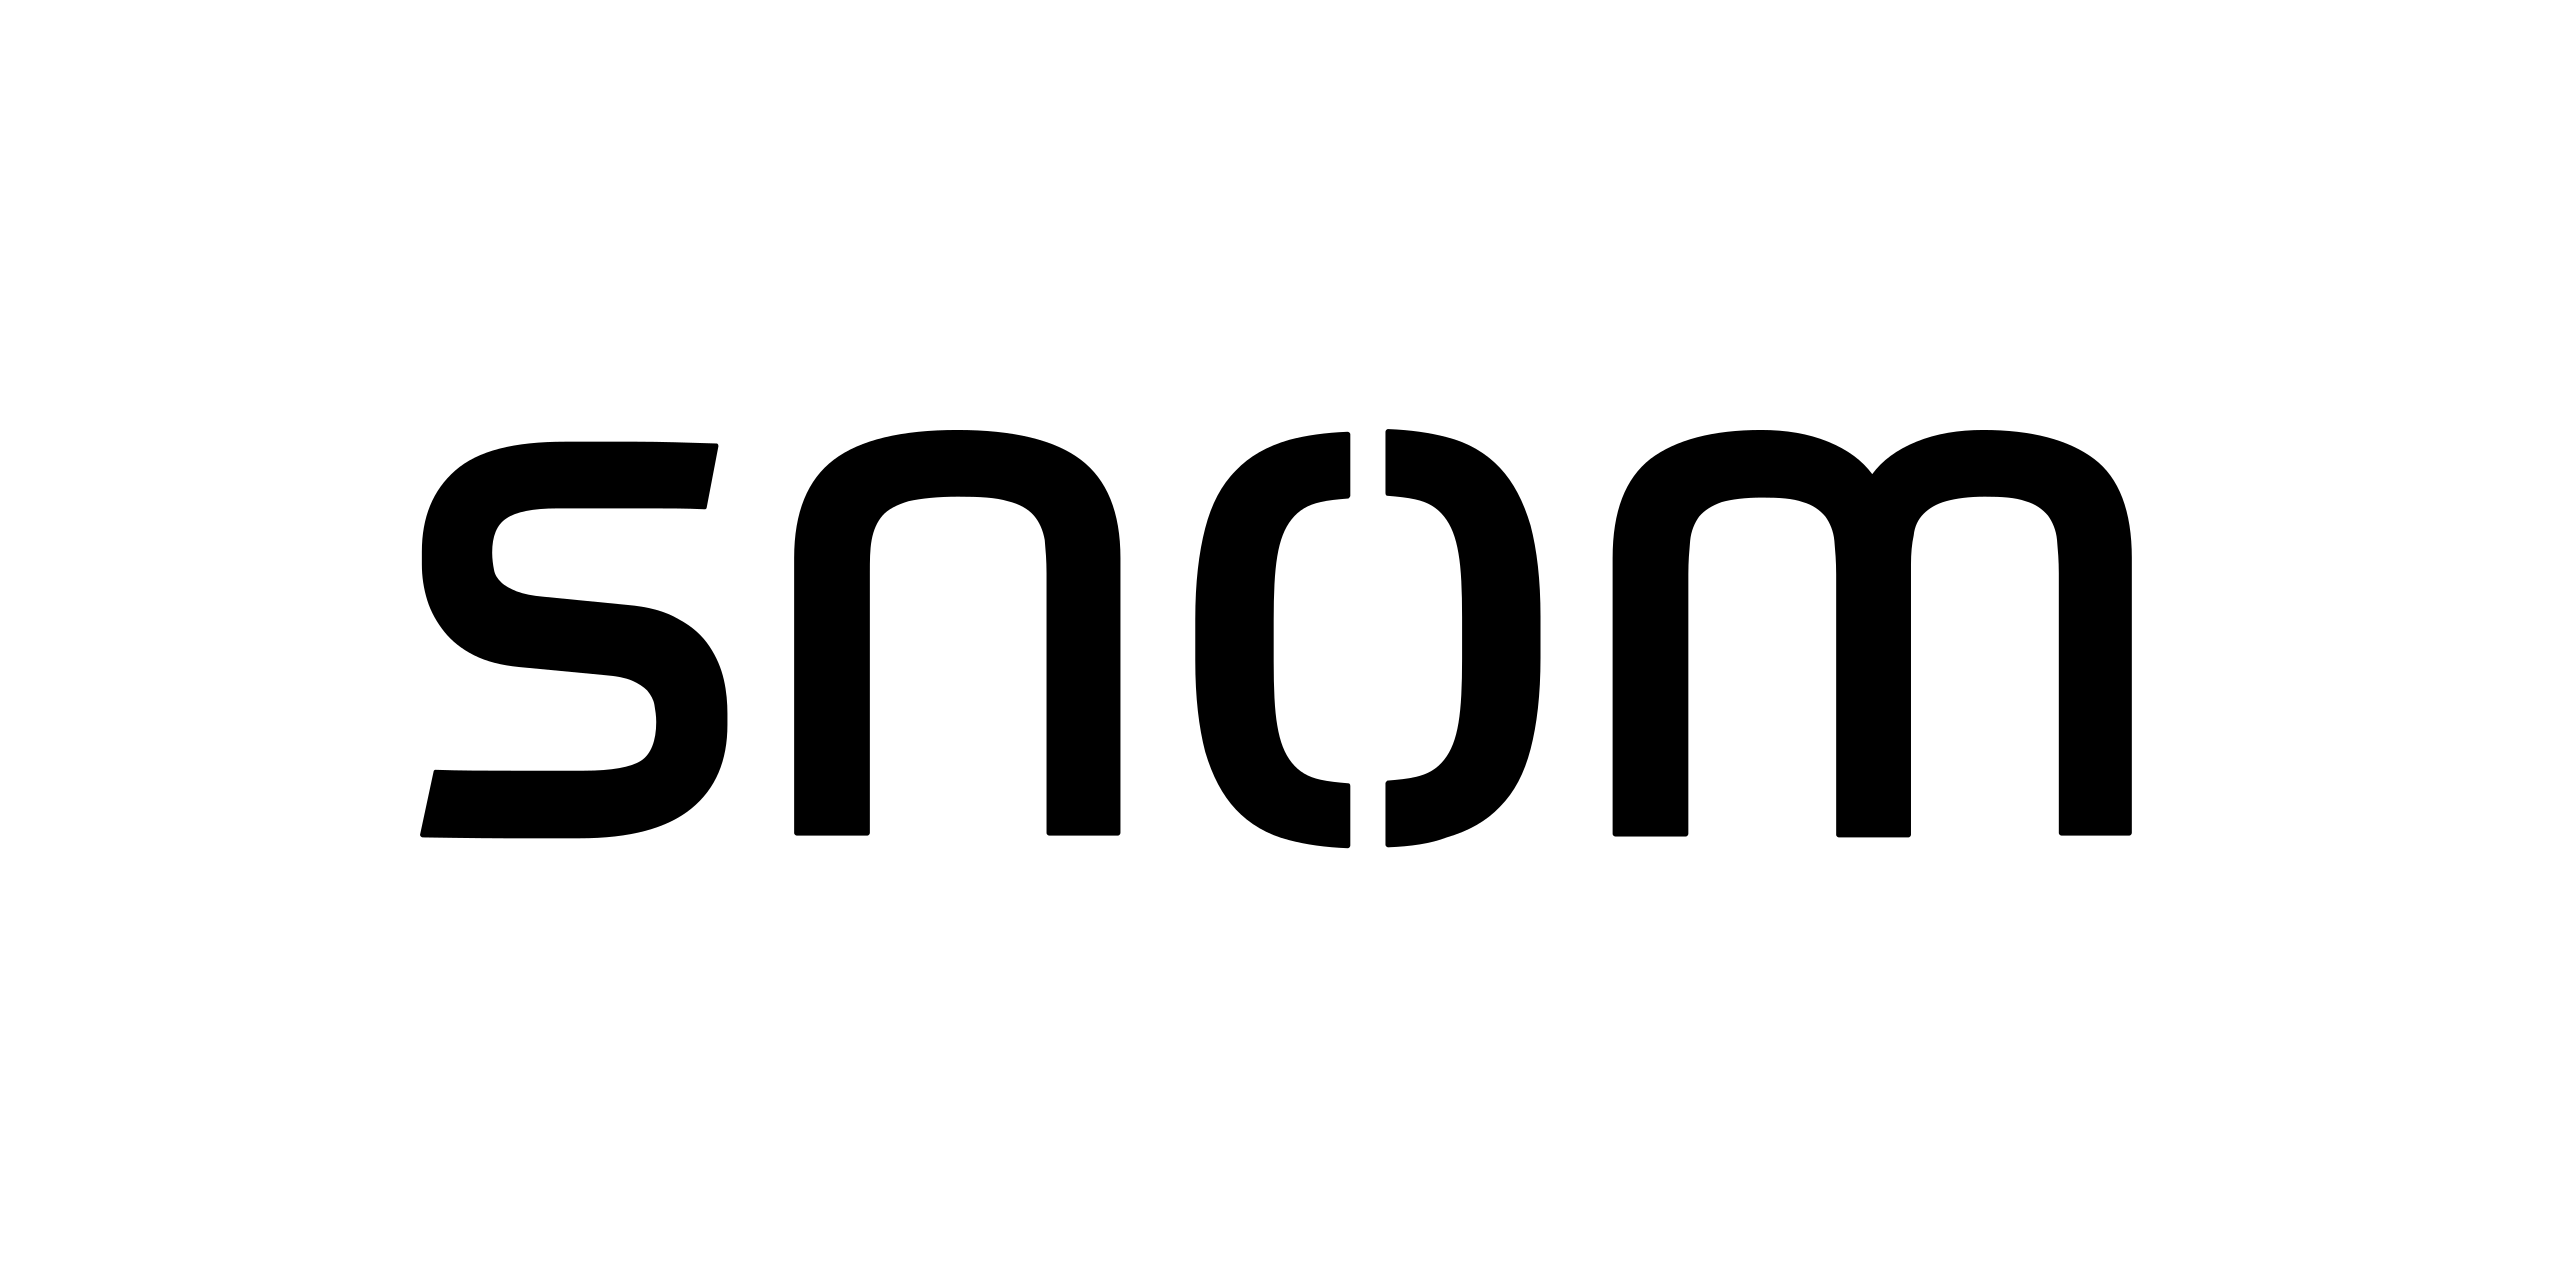 2560px-Snom_Technology_AG,_company_logo.svg